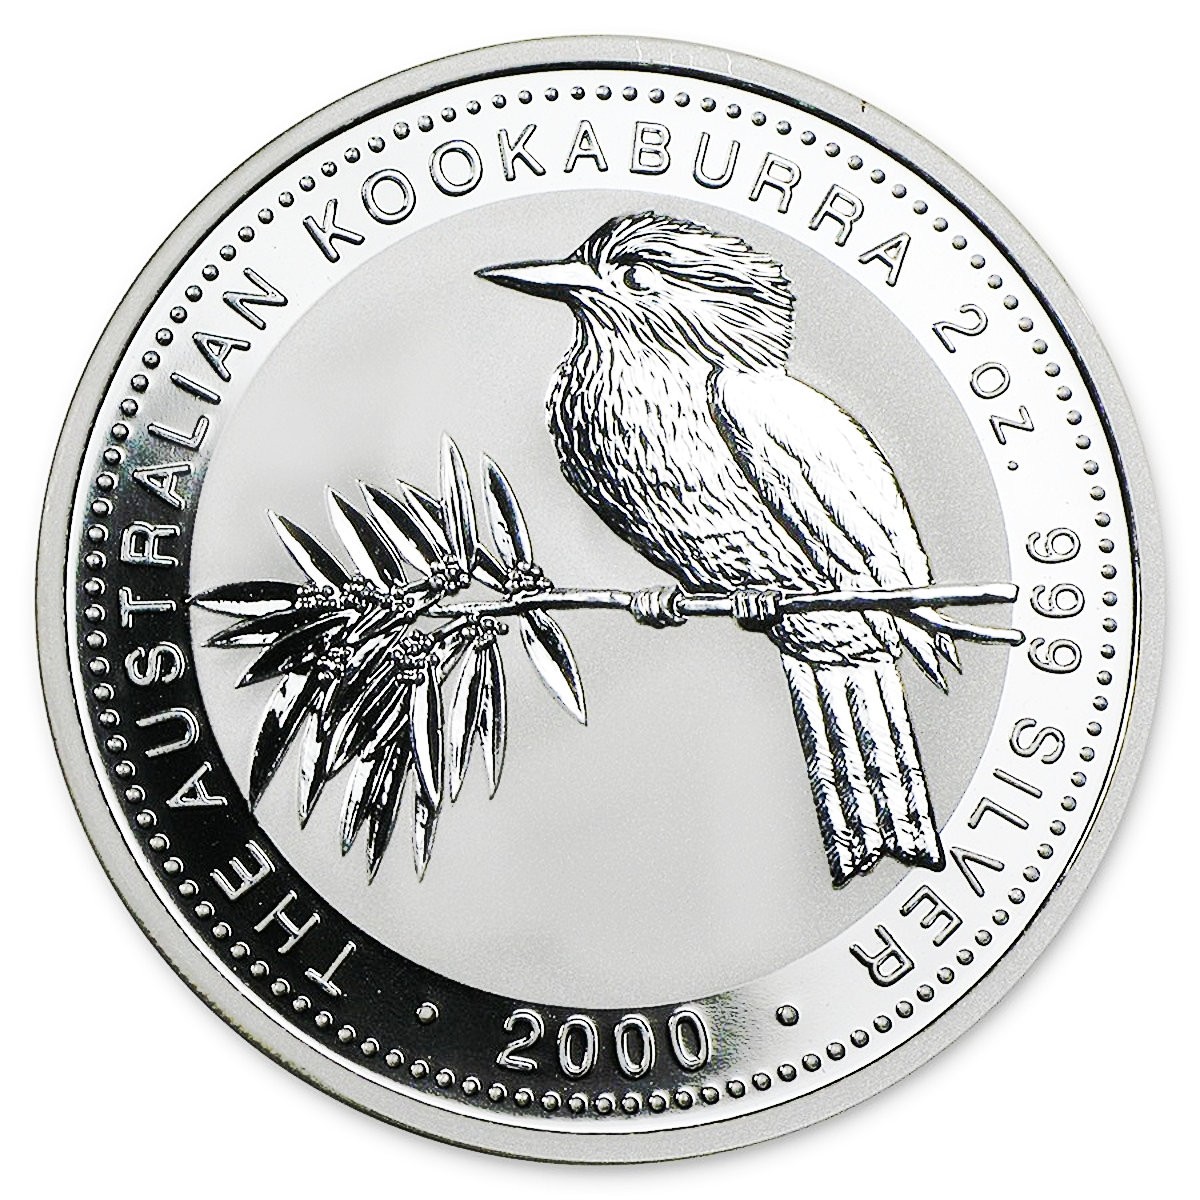 2000 2 oz $2 AUD Australian Silver Kookaburra Coin BU (In Capsule